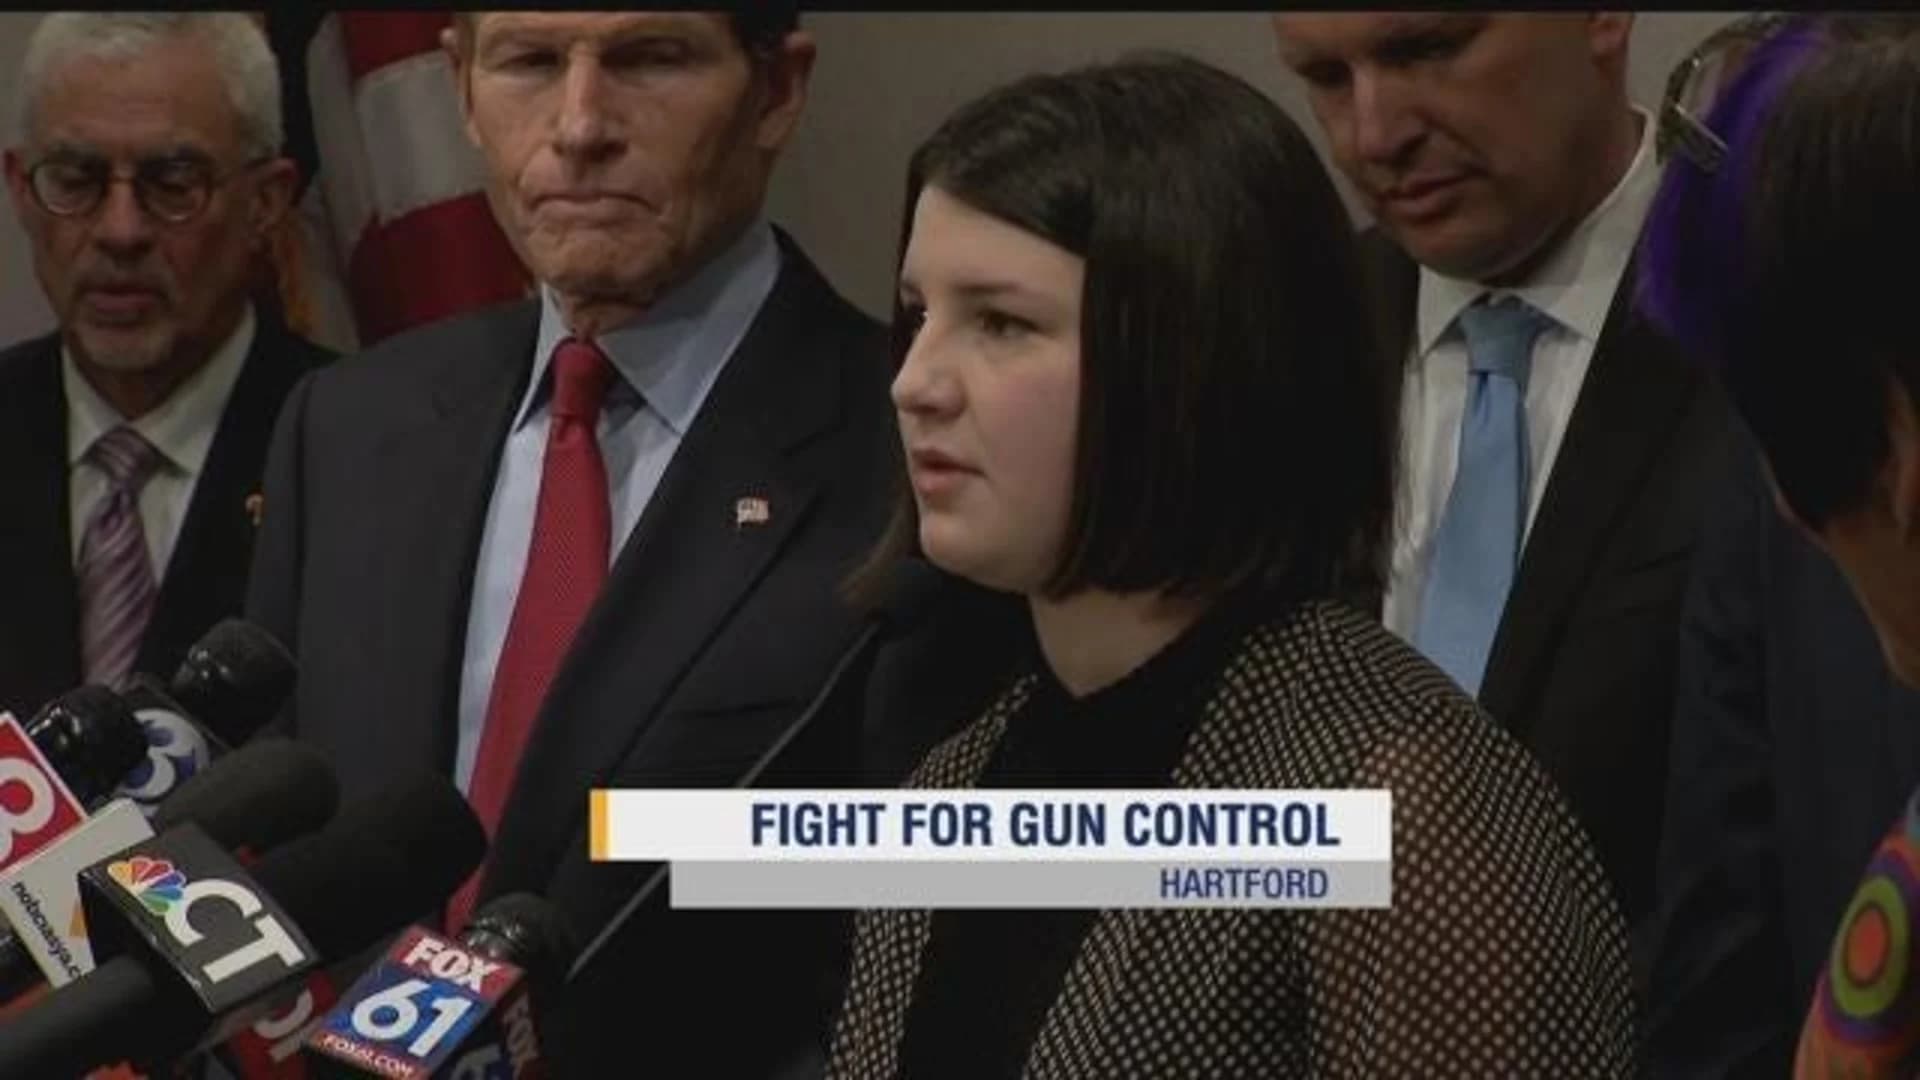 Ridgefield students lead nat’l gun protest on Columbine anniversary